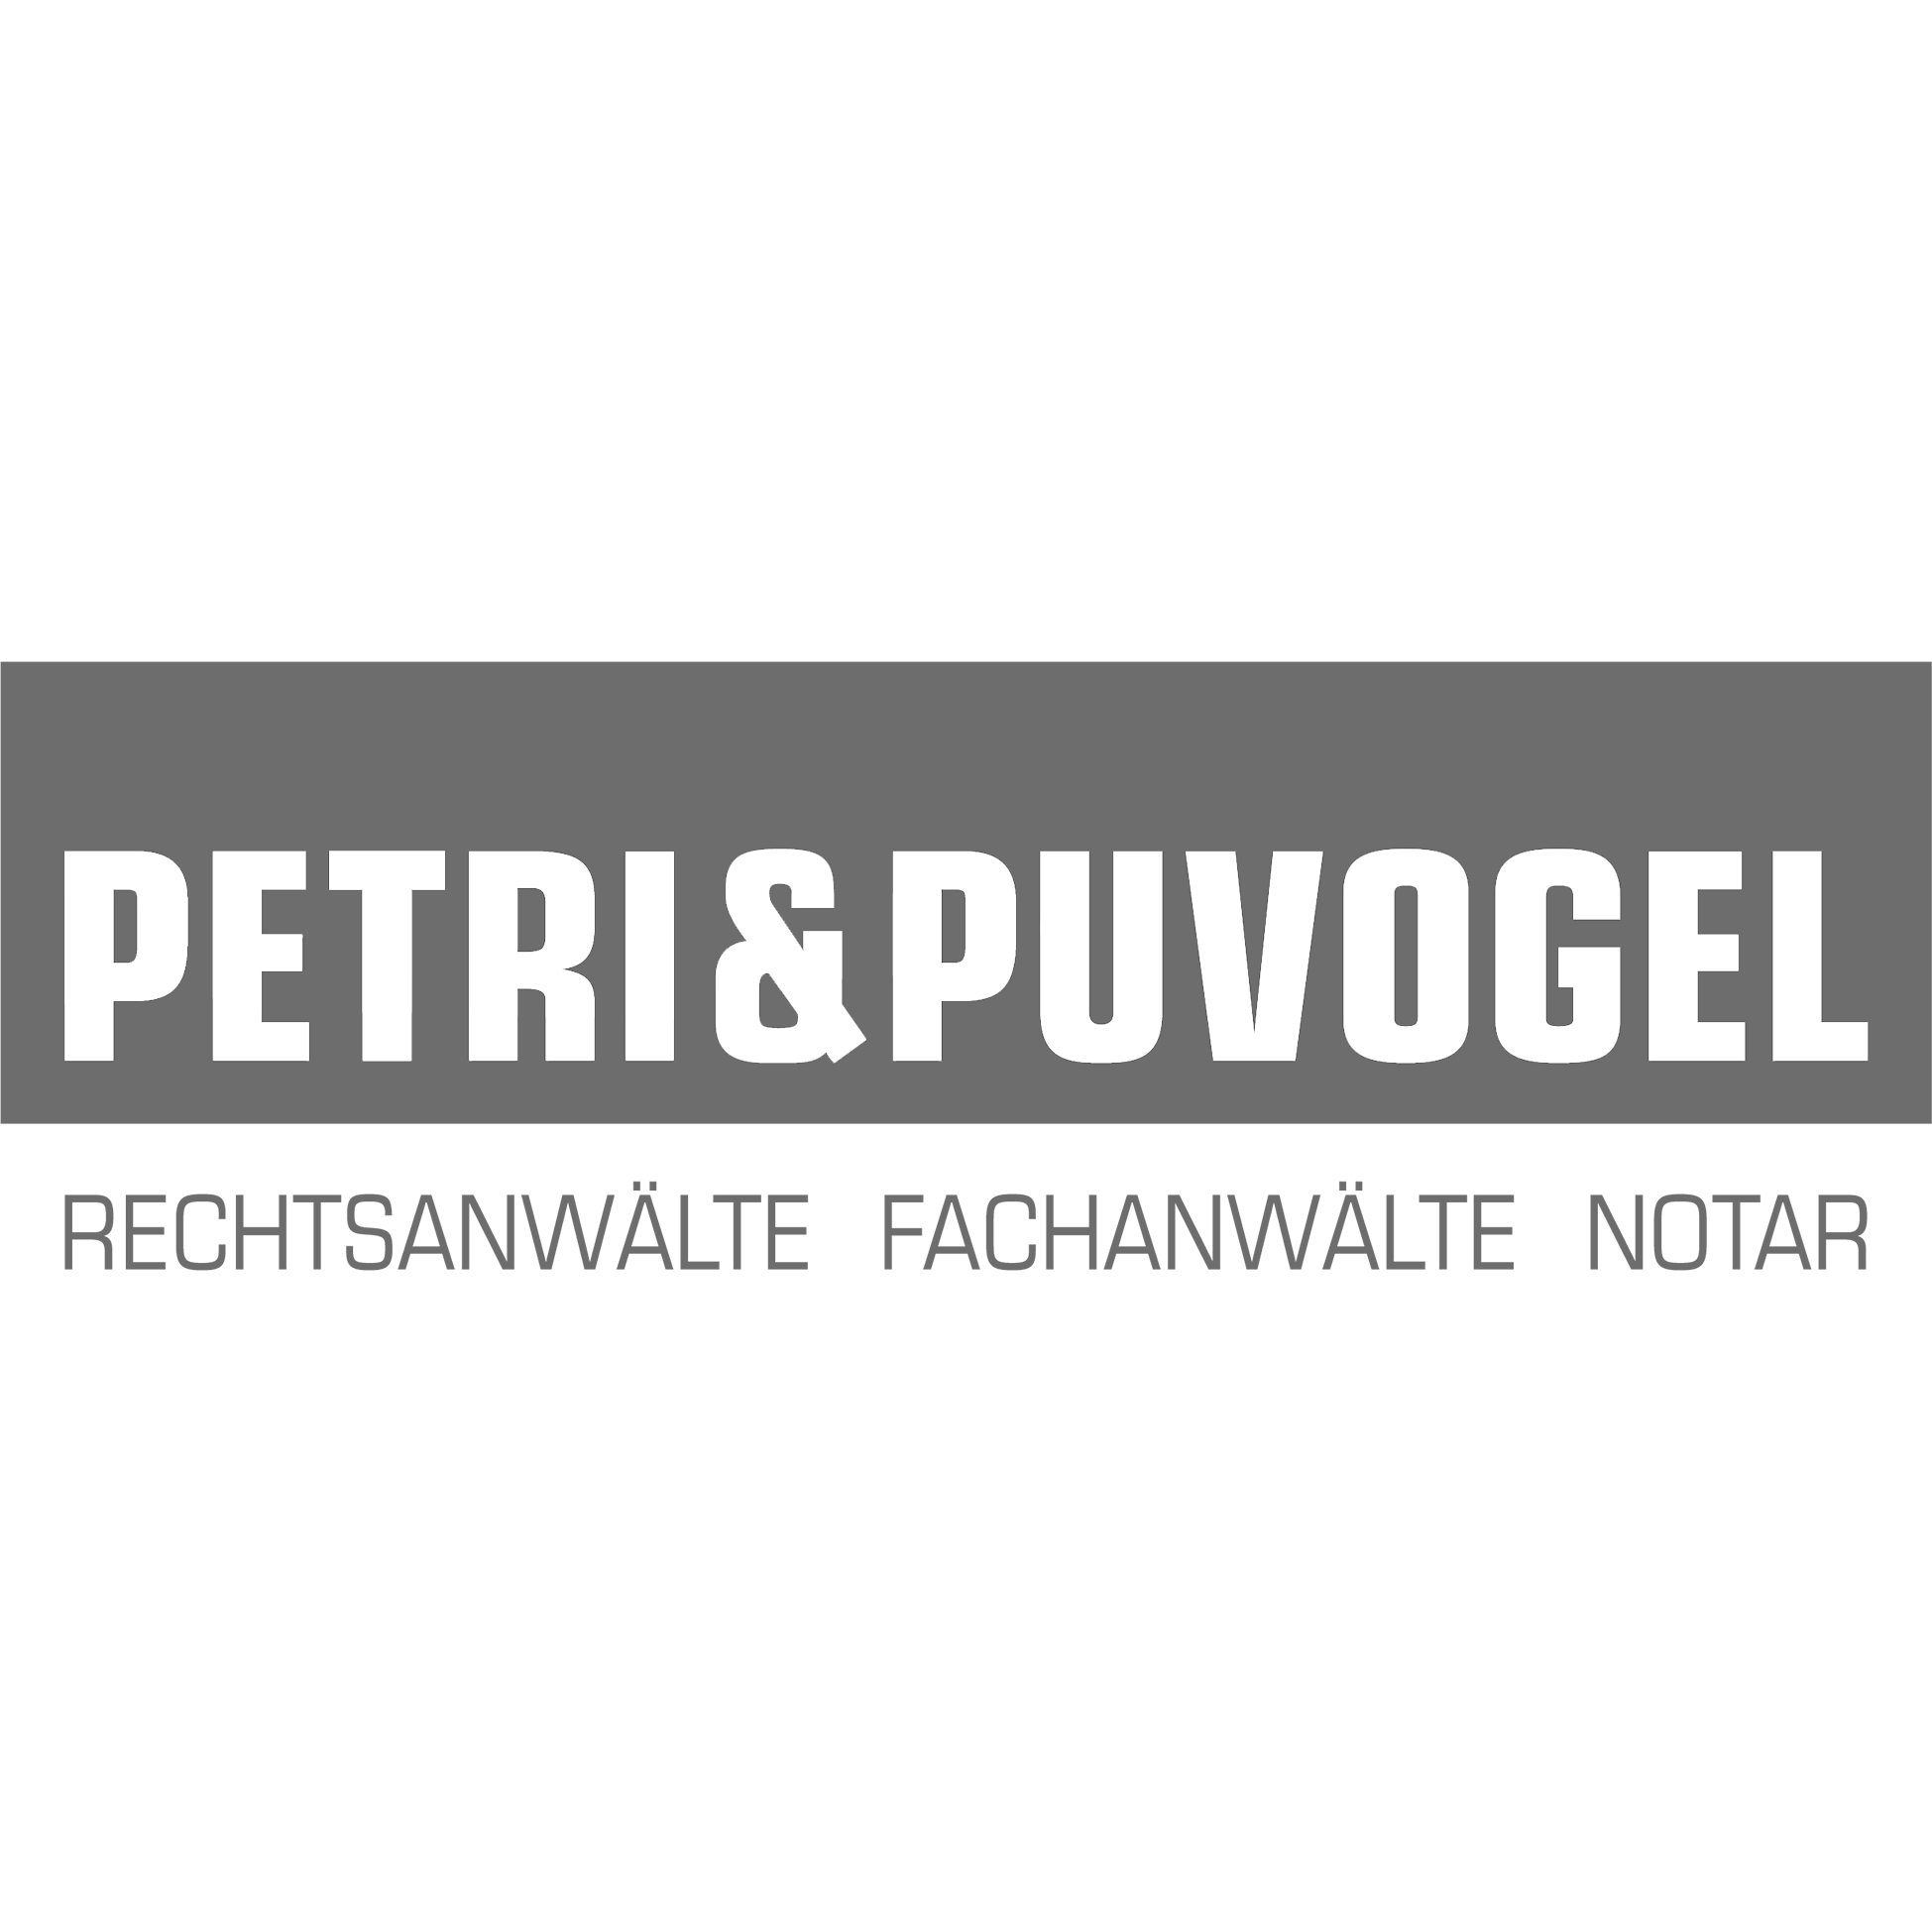 Petri & Puvogel | Rechtsanwälte Fachanwälte Notar